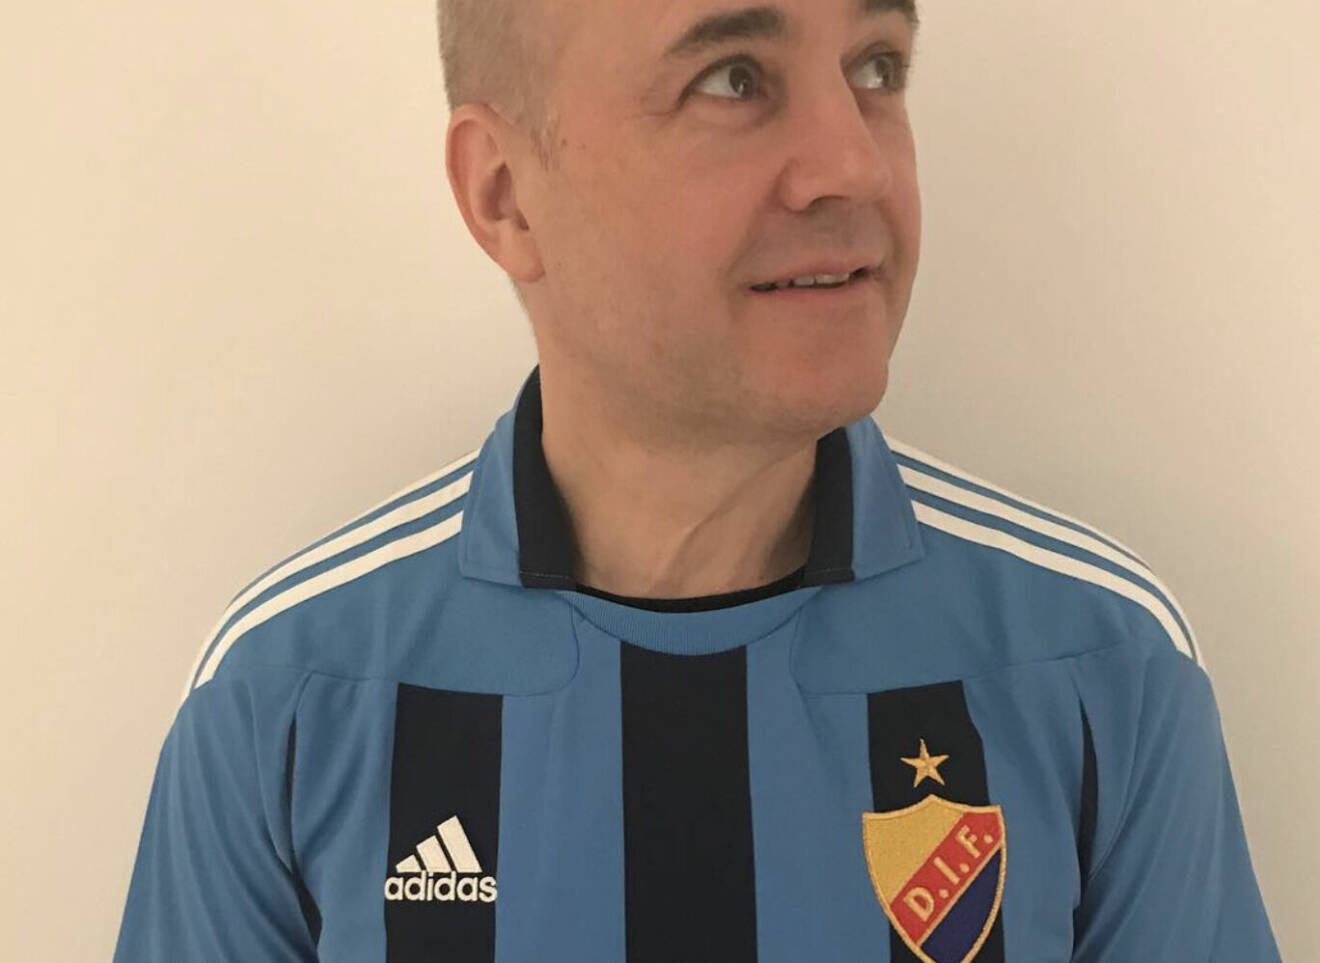 Att Fredrik Reinfeldt är ett stort Djurgårds-fan är väldokumenterat. Här poserar han i klubbens klassiskt blårandiga tröja.